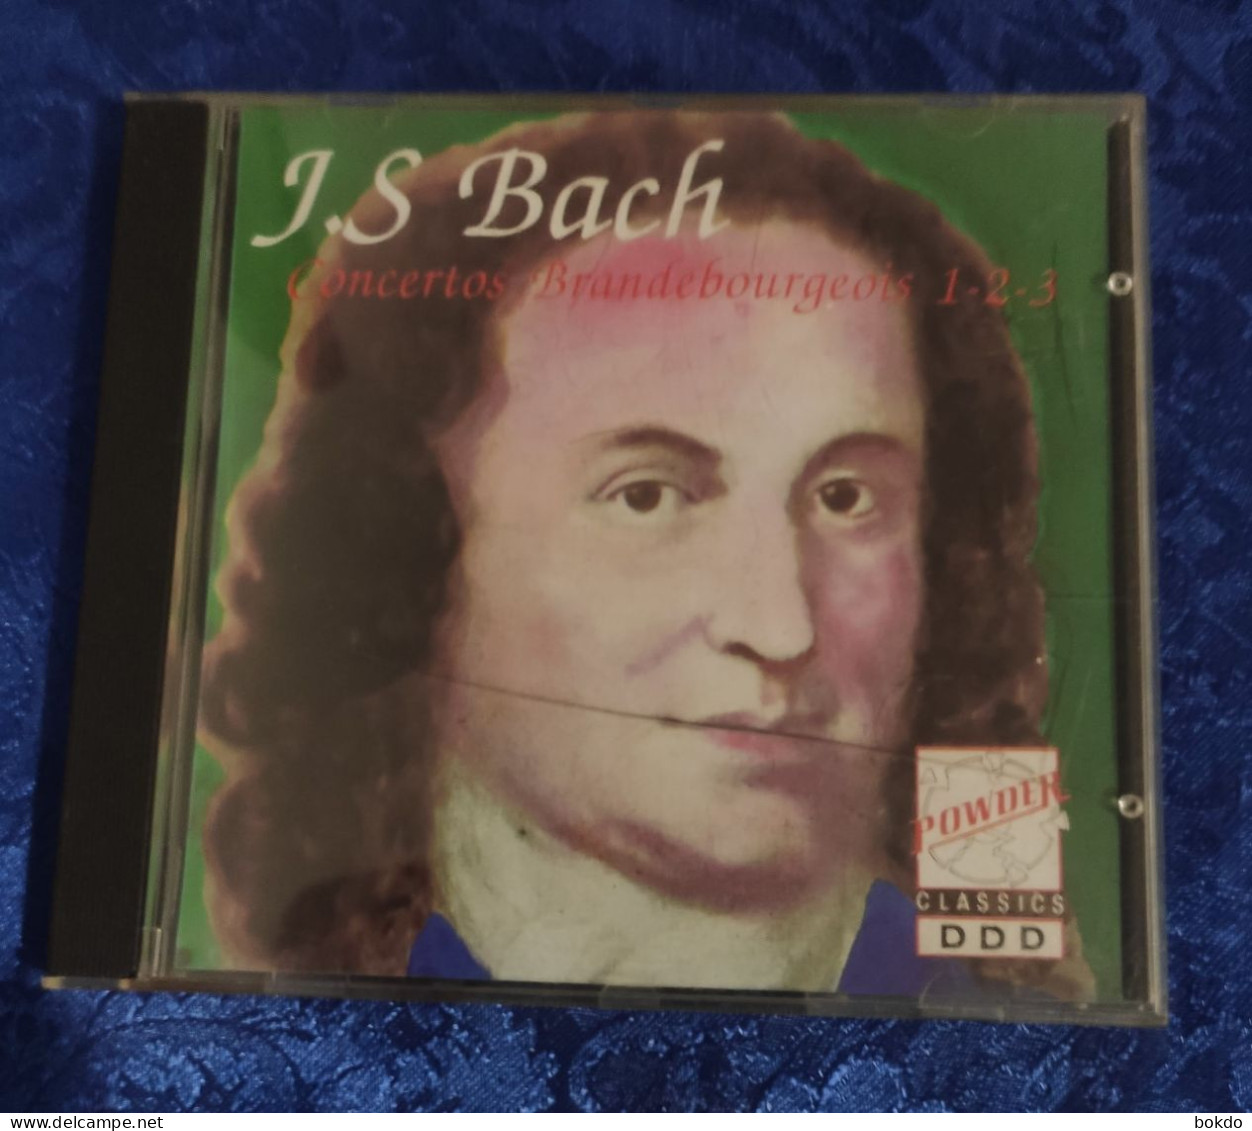 J.S. BACH - Concertos - Classique